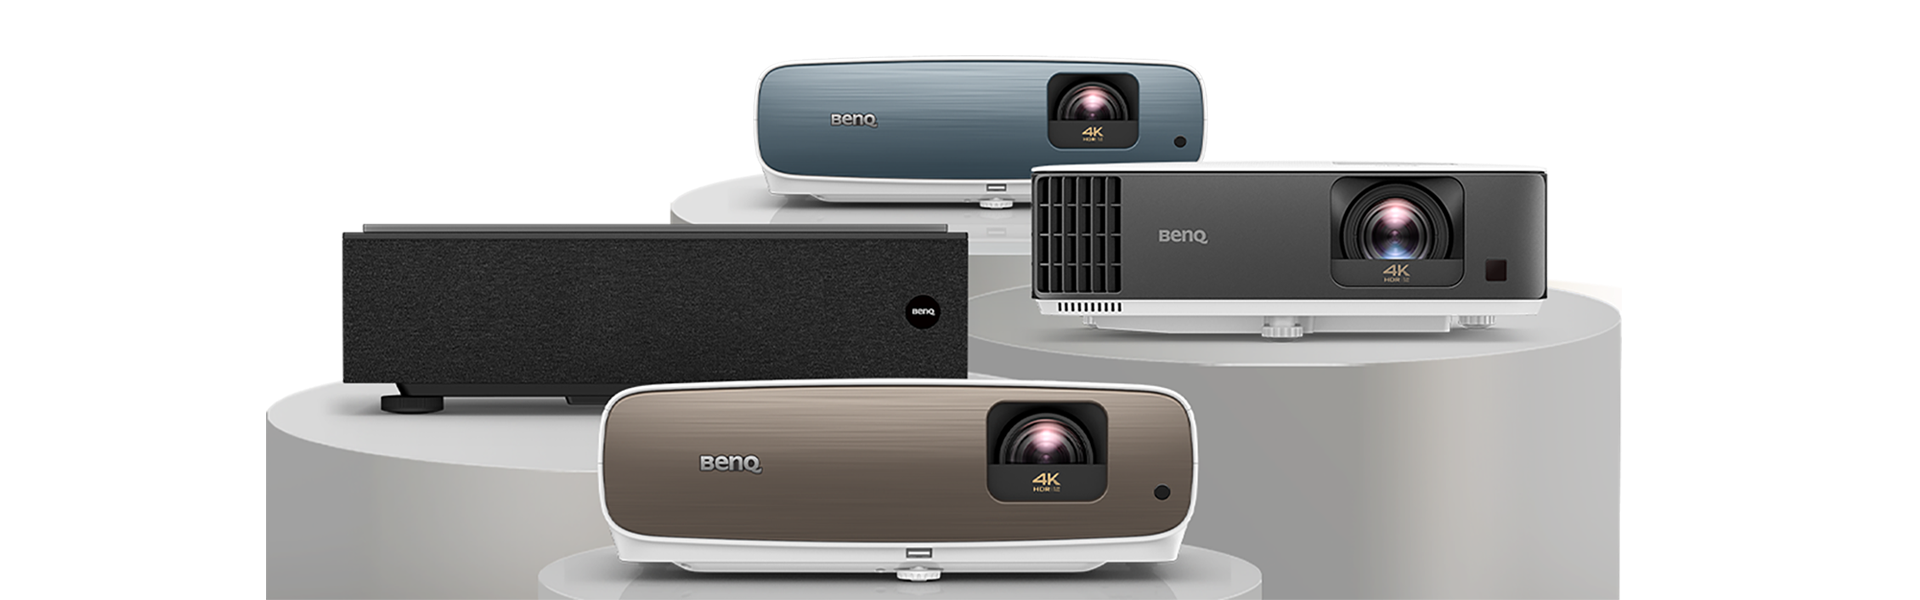 BenQ 4k Projector